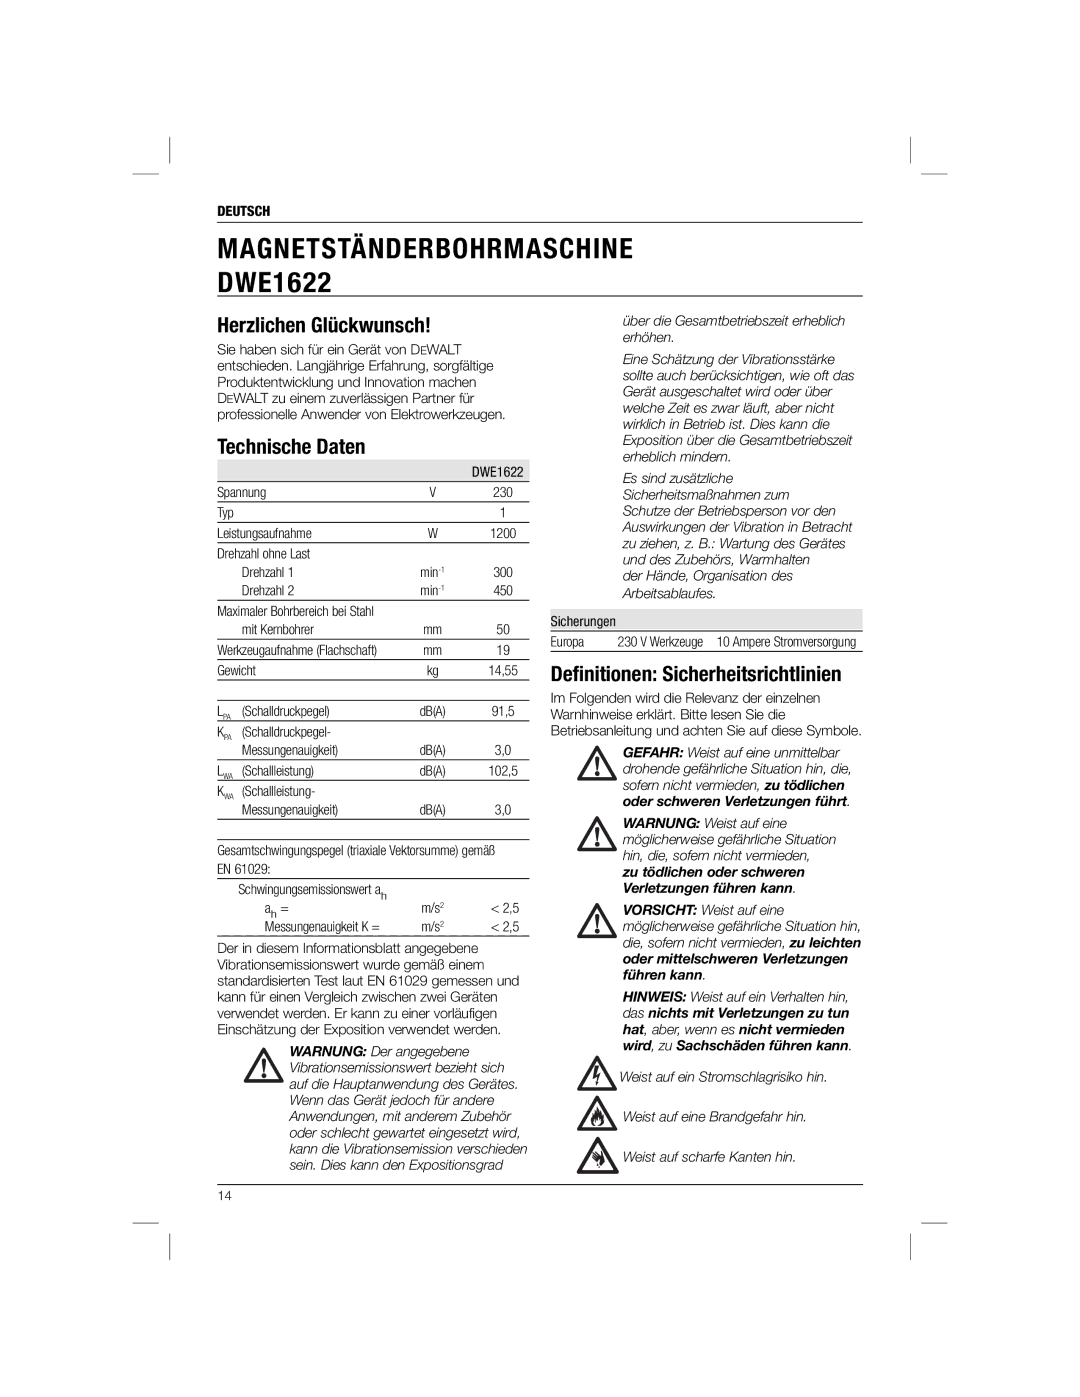 DeWalt DWE1622K manual Herzlichen Glückwunsch, Technische Daten, Deﬁnitionen Sicherheitsrichtlinien 